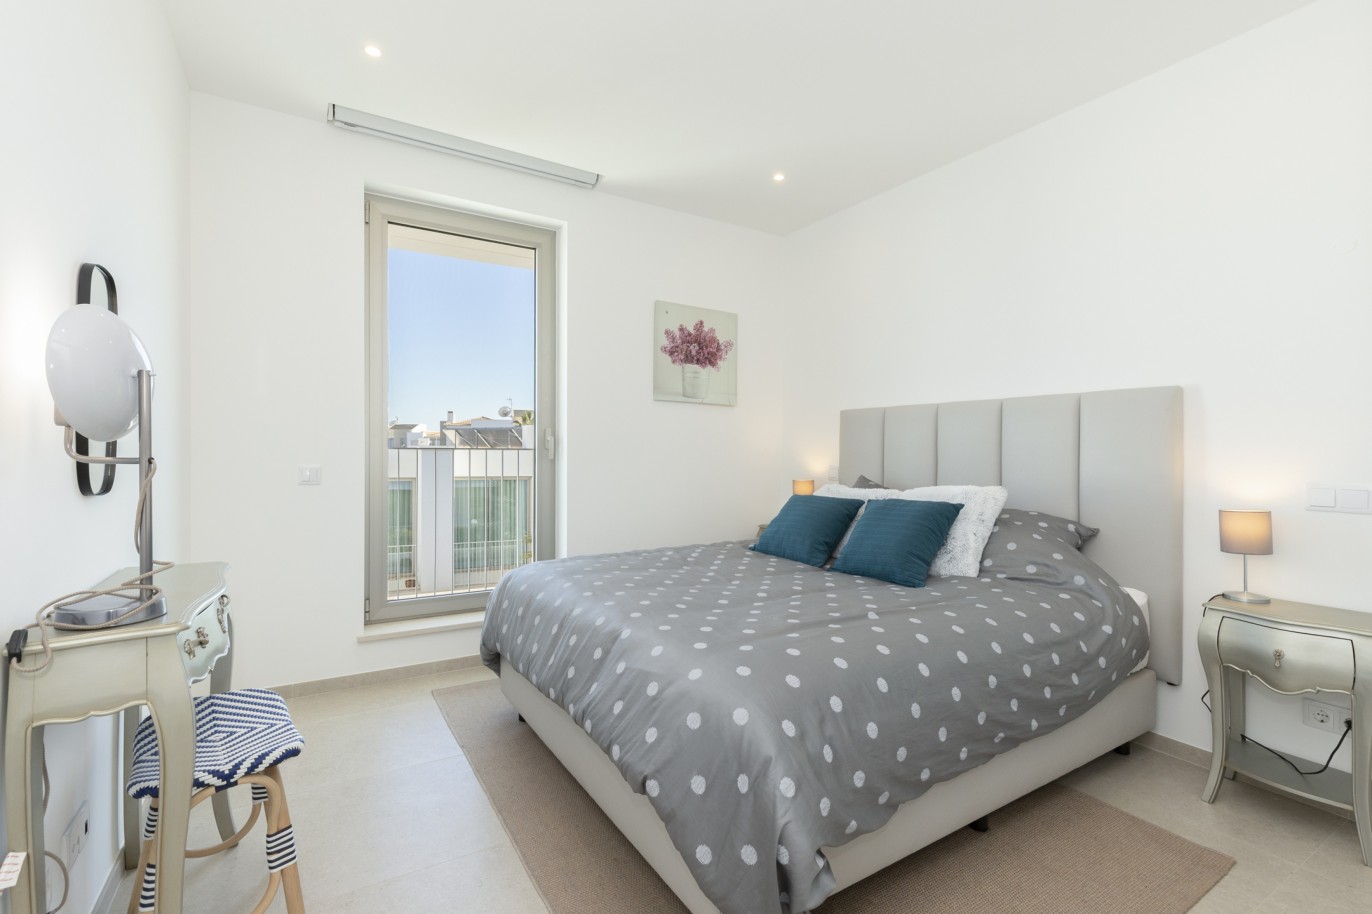 Villa de 3 dormitorios en condominio privado, en venta, en Lagos, Algarve_217634